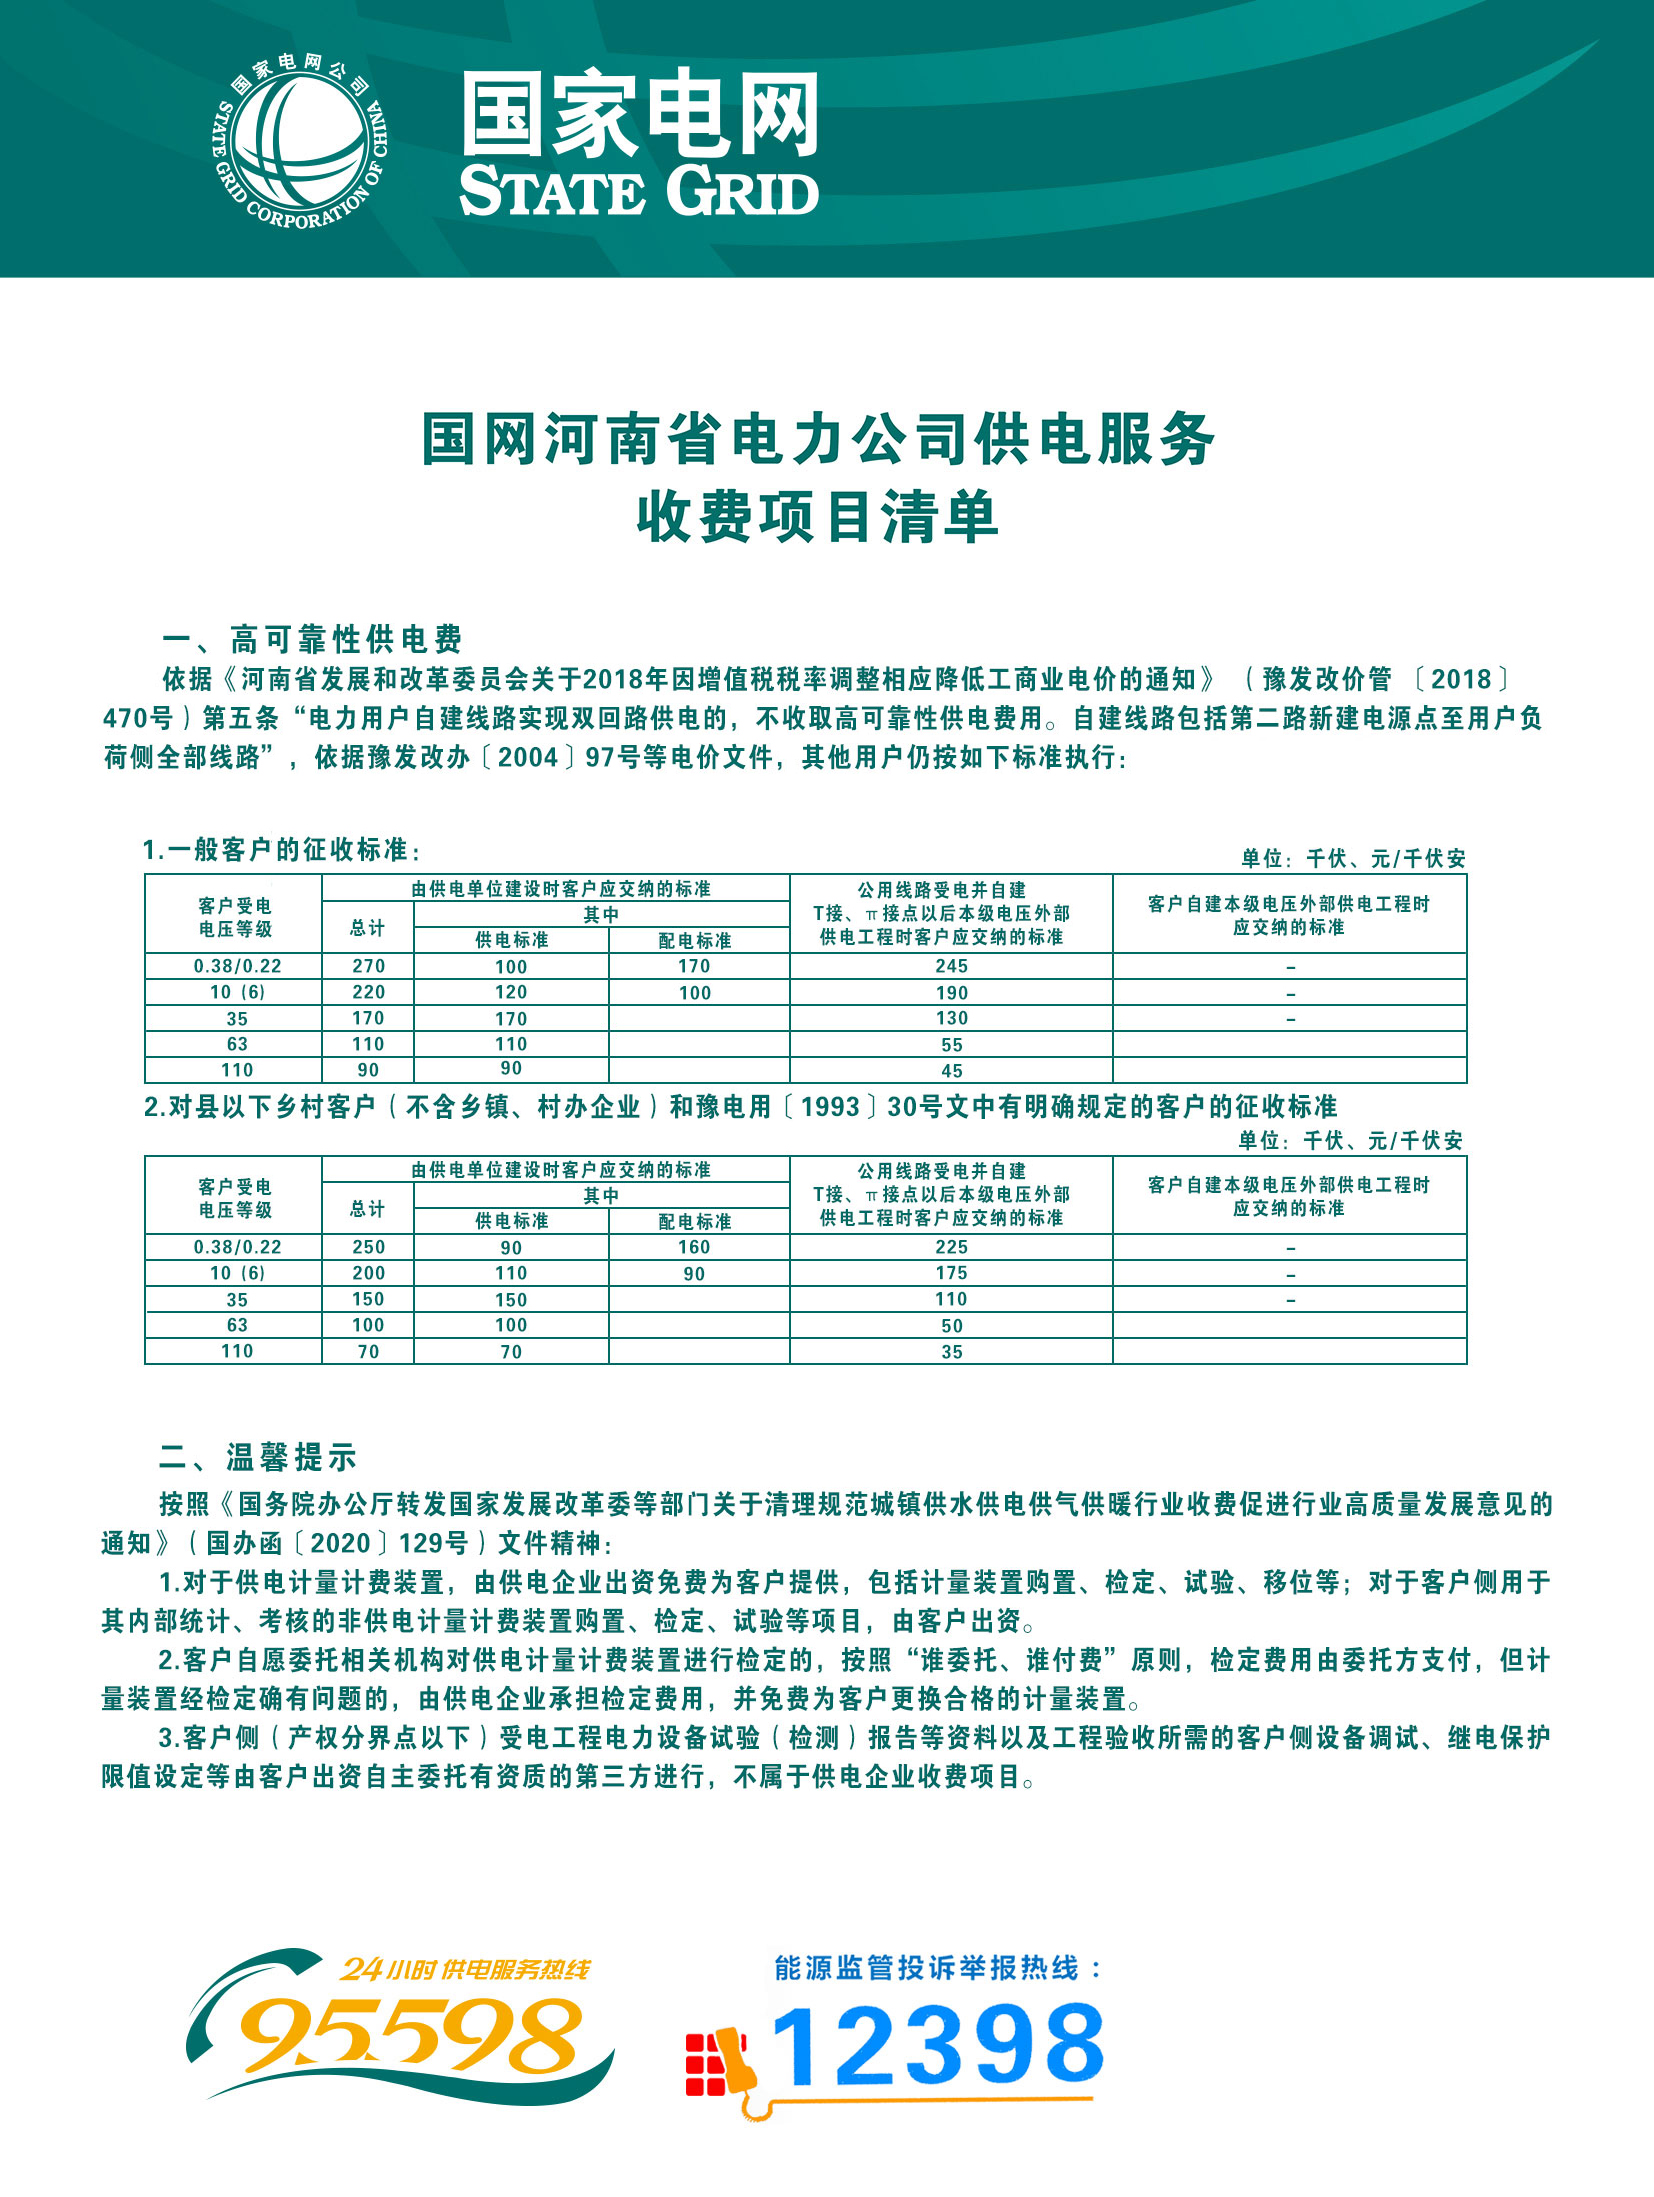 7.国网河南省电力公司供电服务收费项目清单.jpg